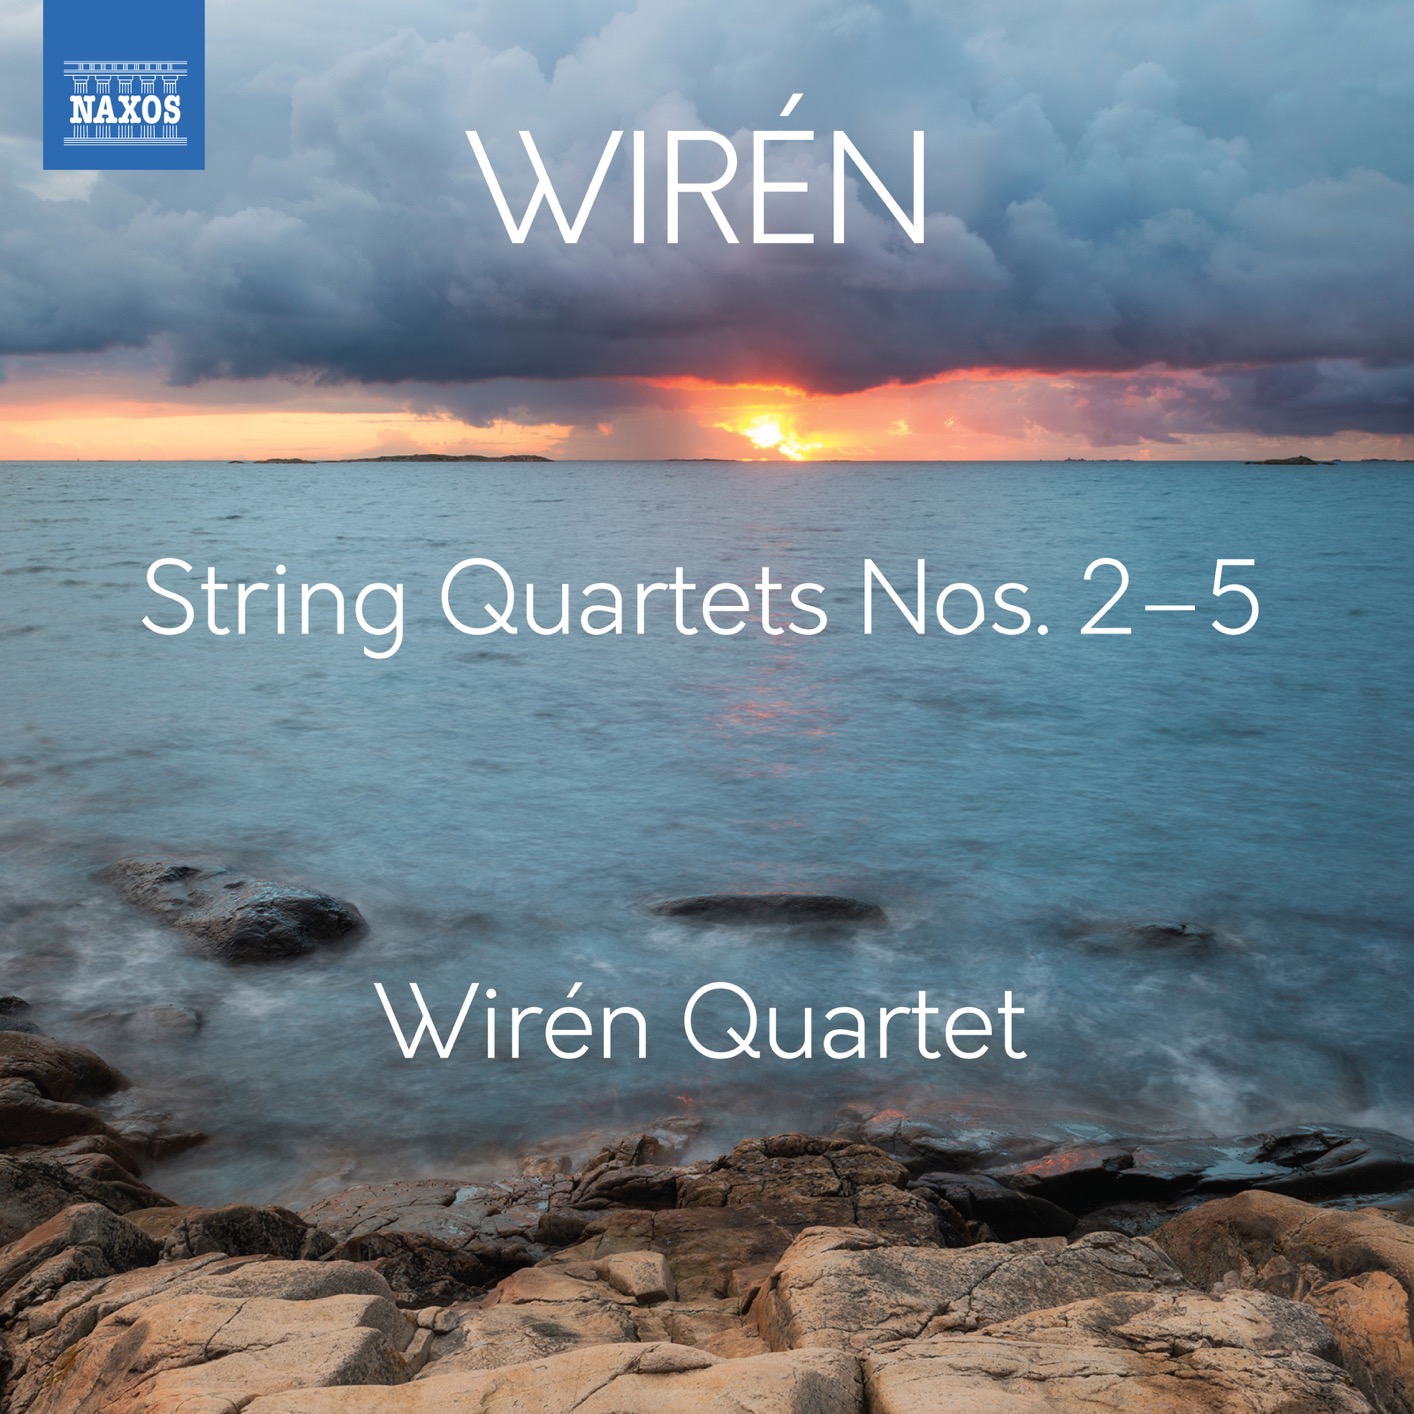 Wiren Quartet - Wiren: String Quartets Nos. 2-5 (2018) [FLAC 24bit/96kHz]